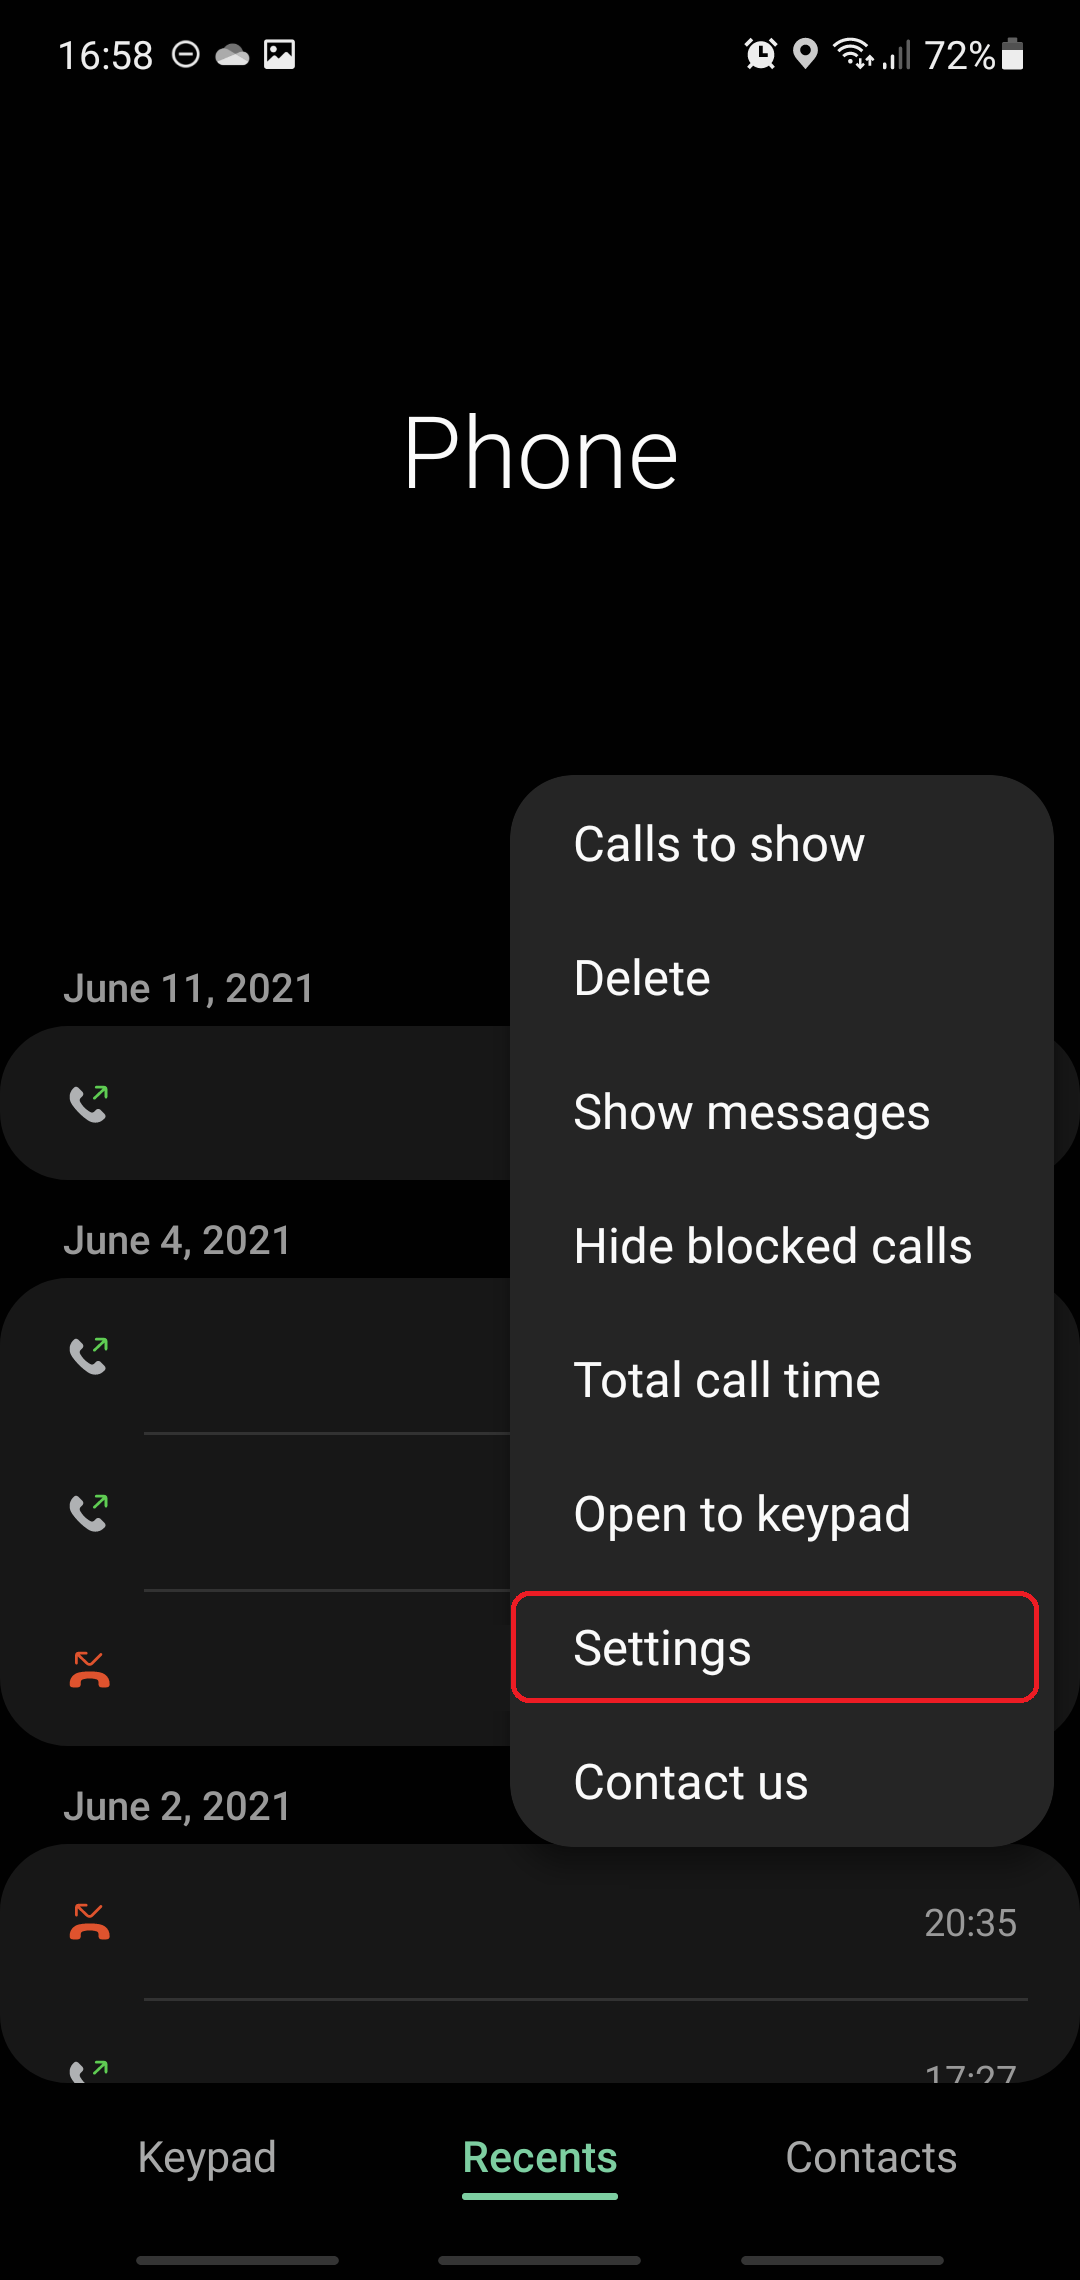 Samsung One UI cung cấp tính năng hình nền cuộc gọi theo từng liên hệ. Thật tuyệt vời khi bạn có thể tùy chỉnh hình nền riêng cho từng người trong danh bạ. Cùng xem hình ảnh liên quan để biết thêm chi tiết! 